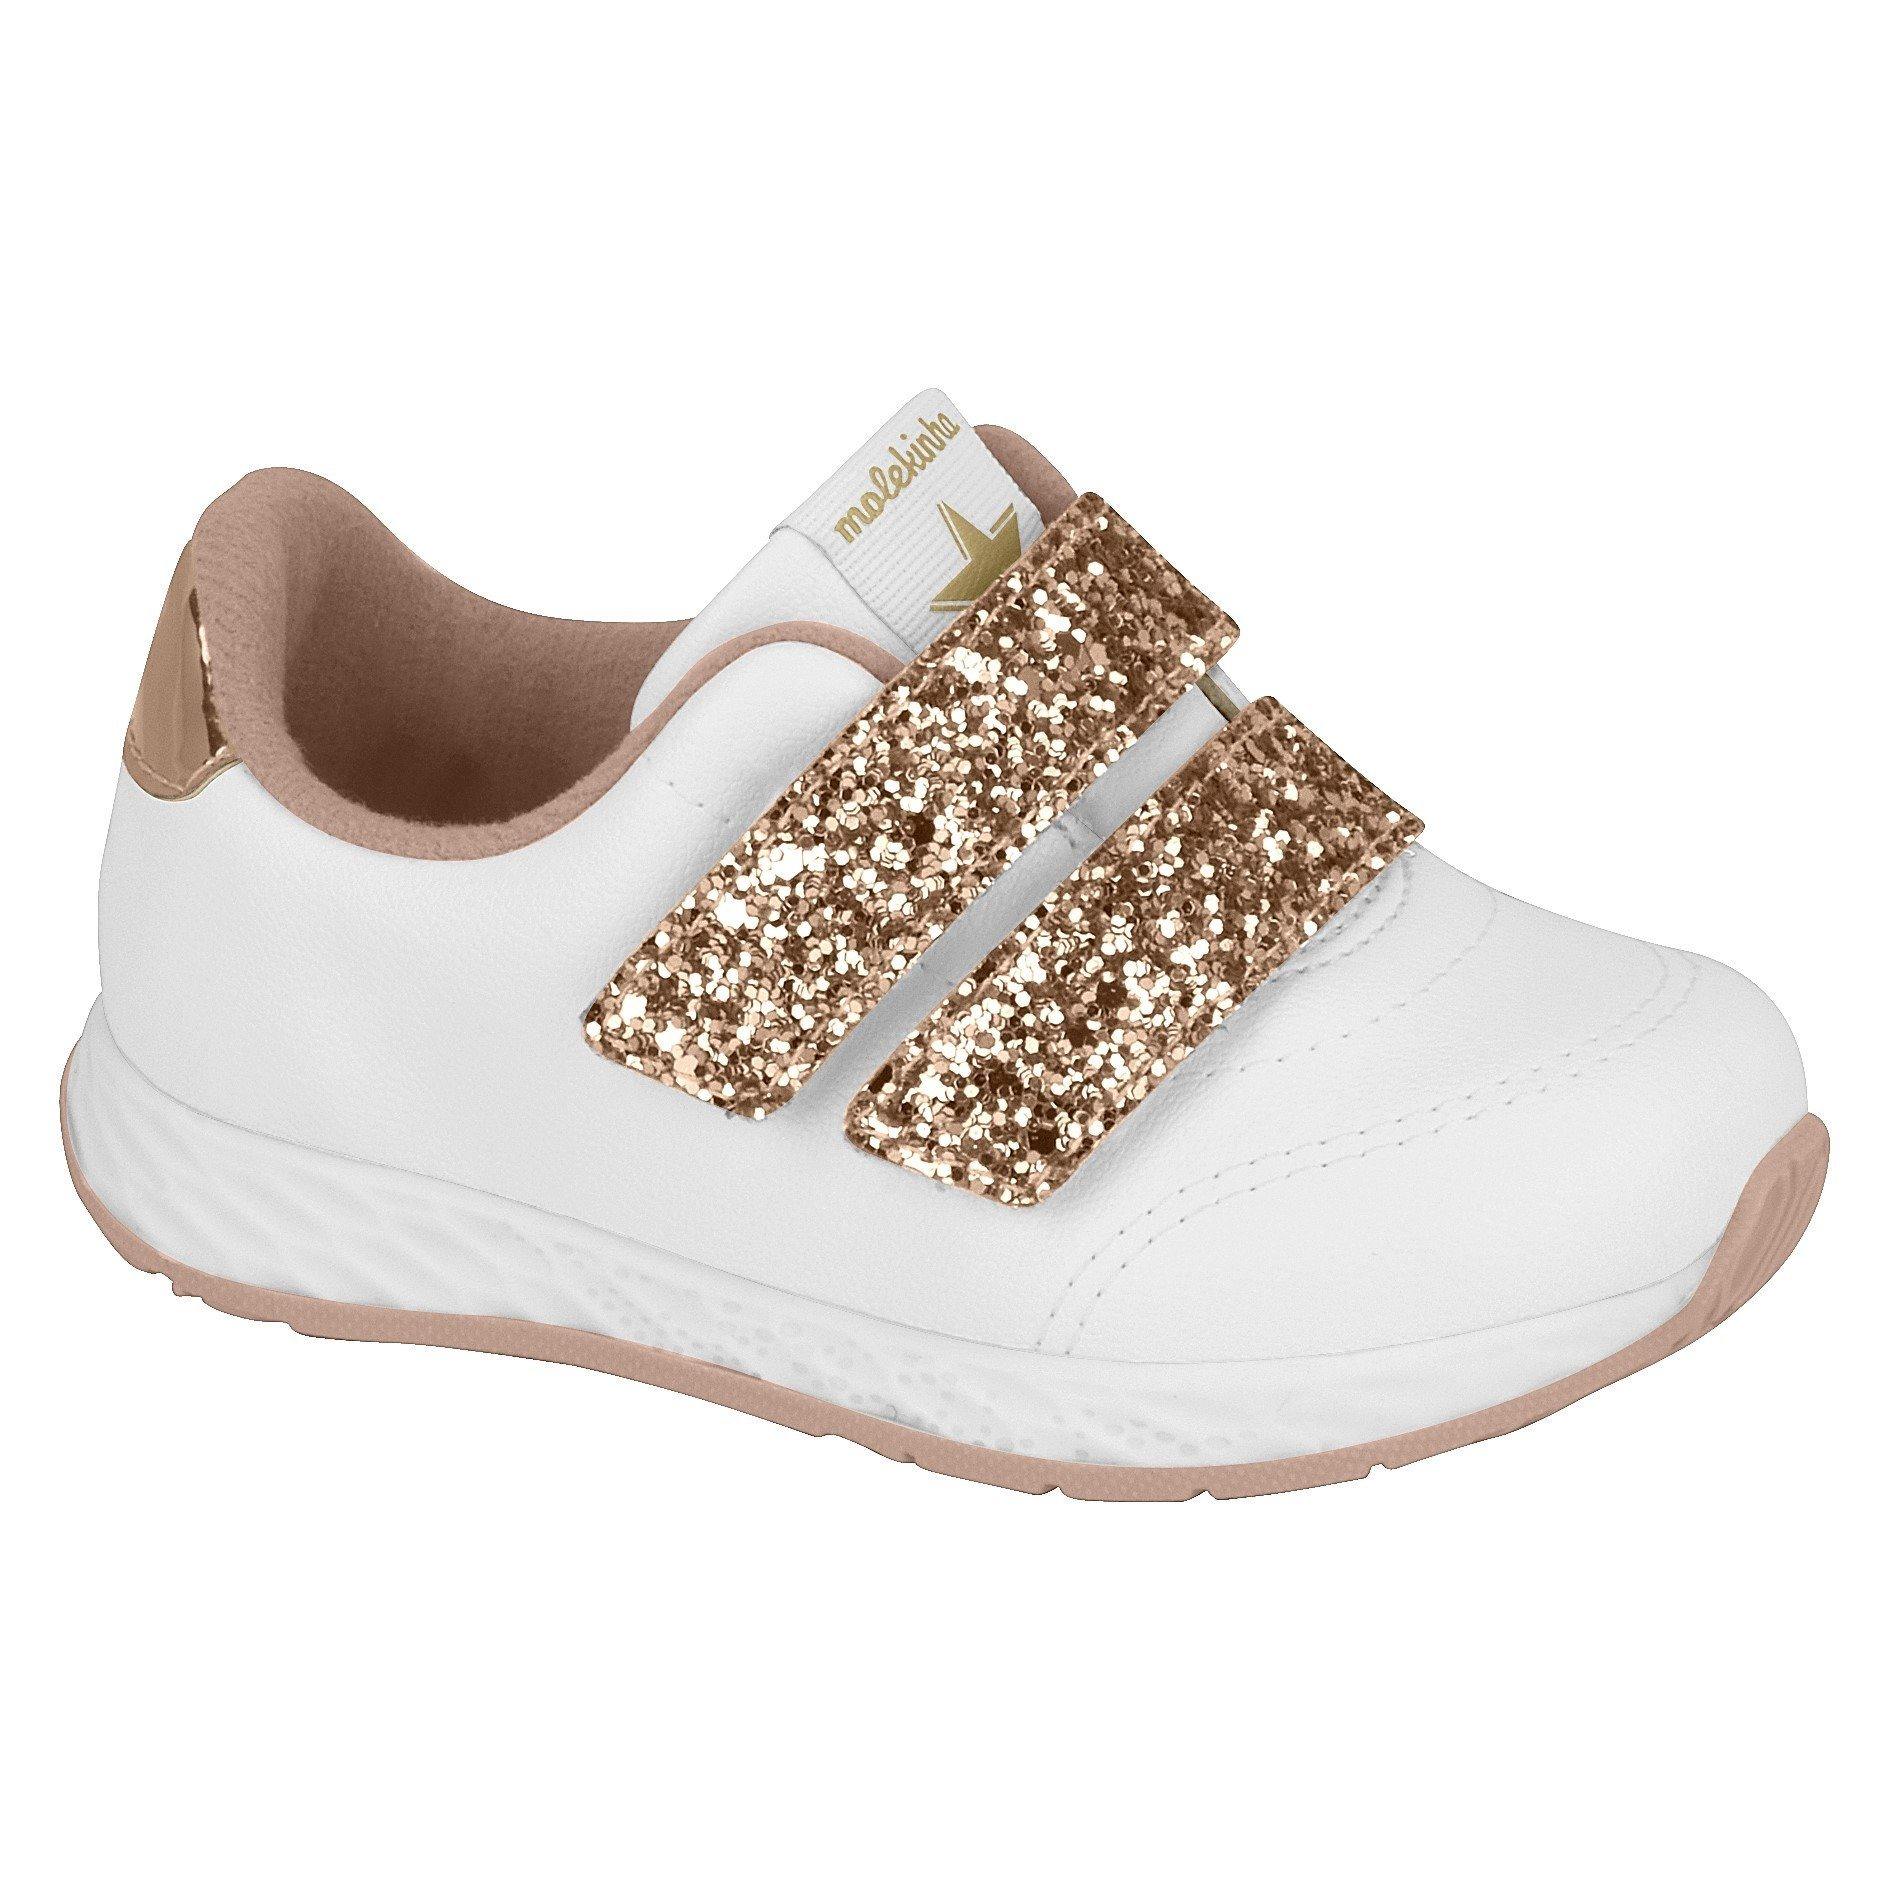 Molekinha 2701-100 Girls Sneaker in White and Rose Gold